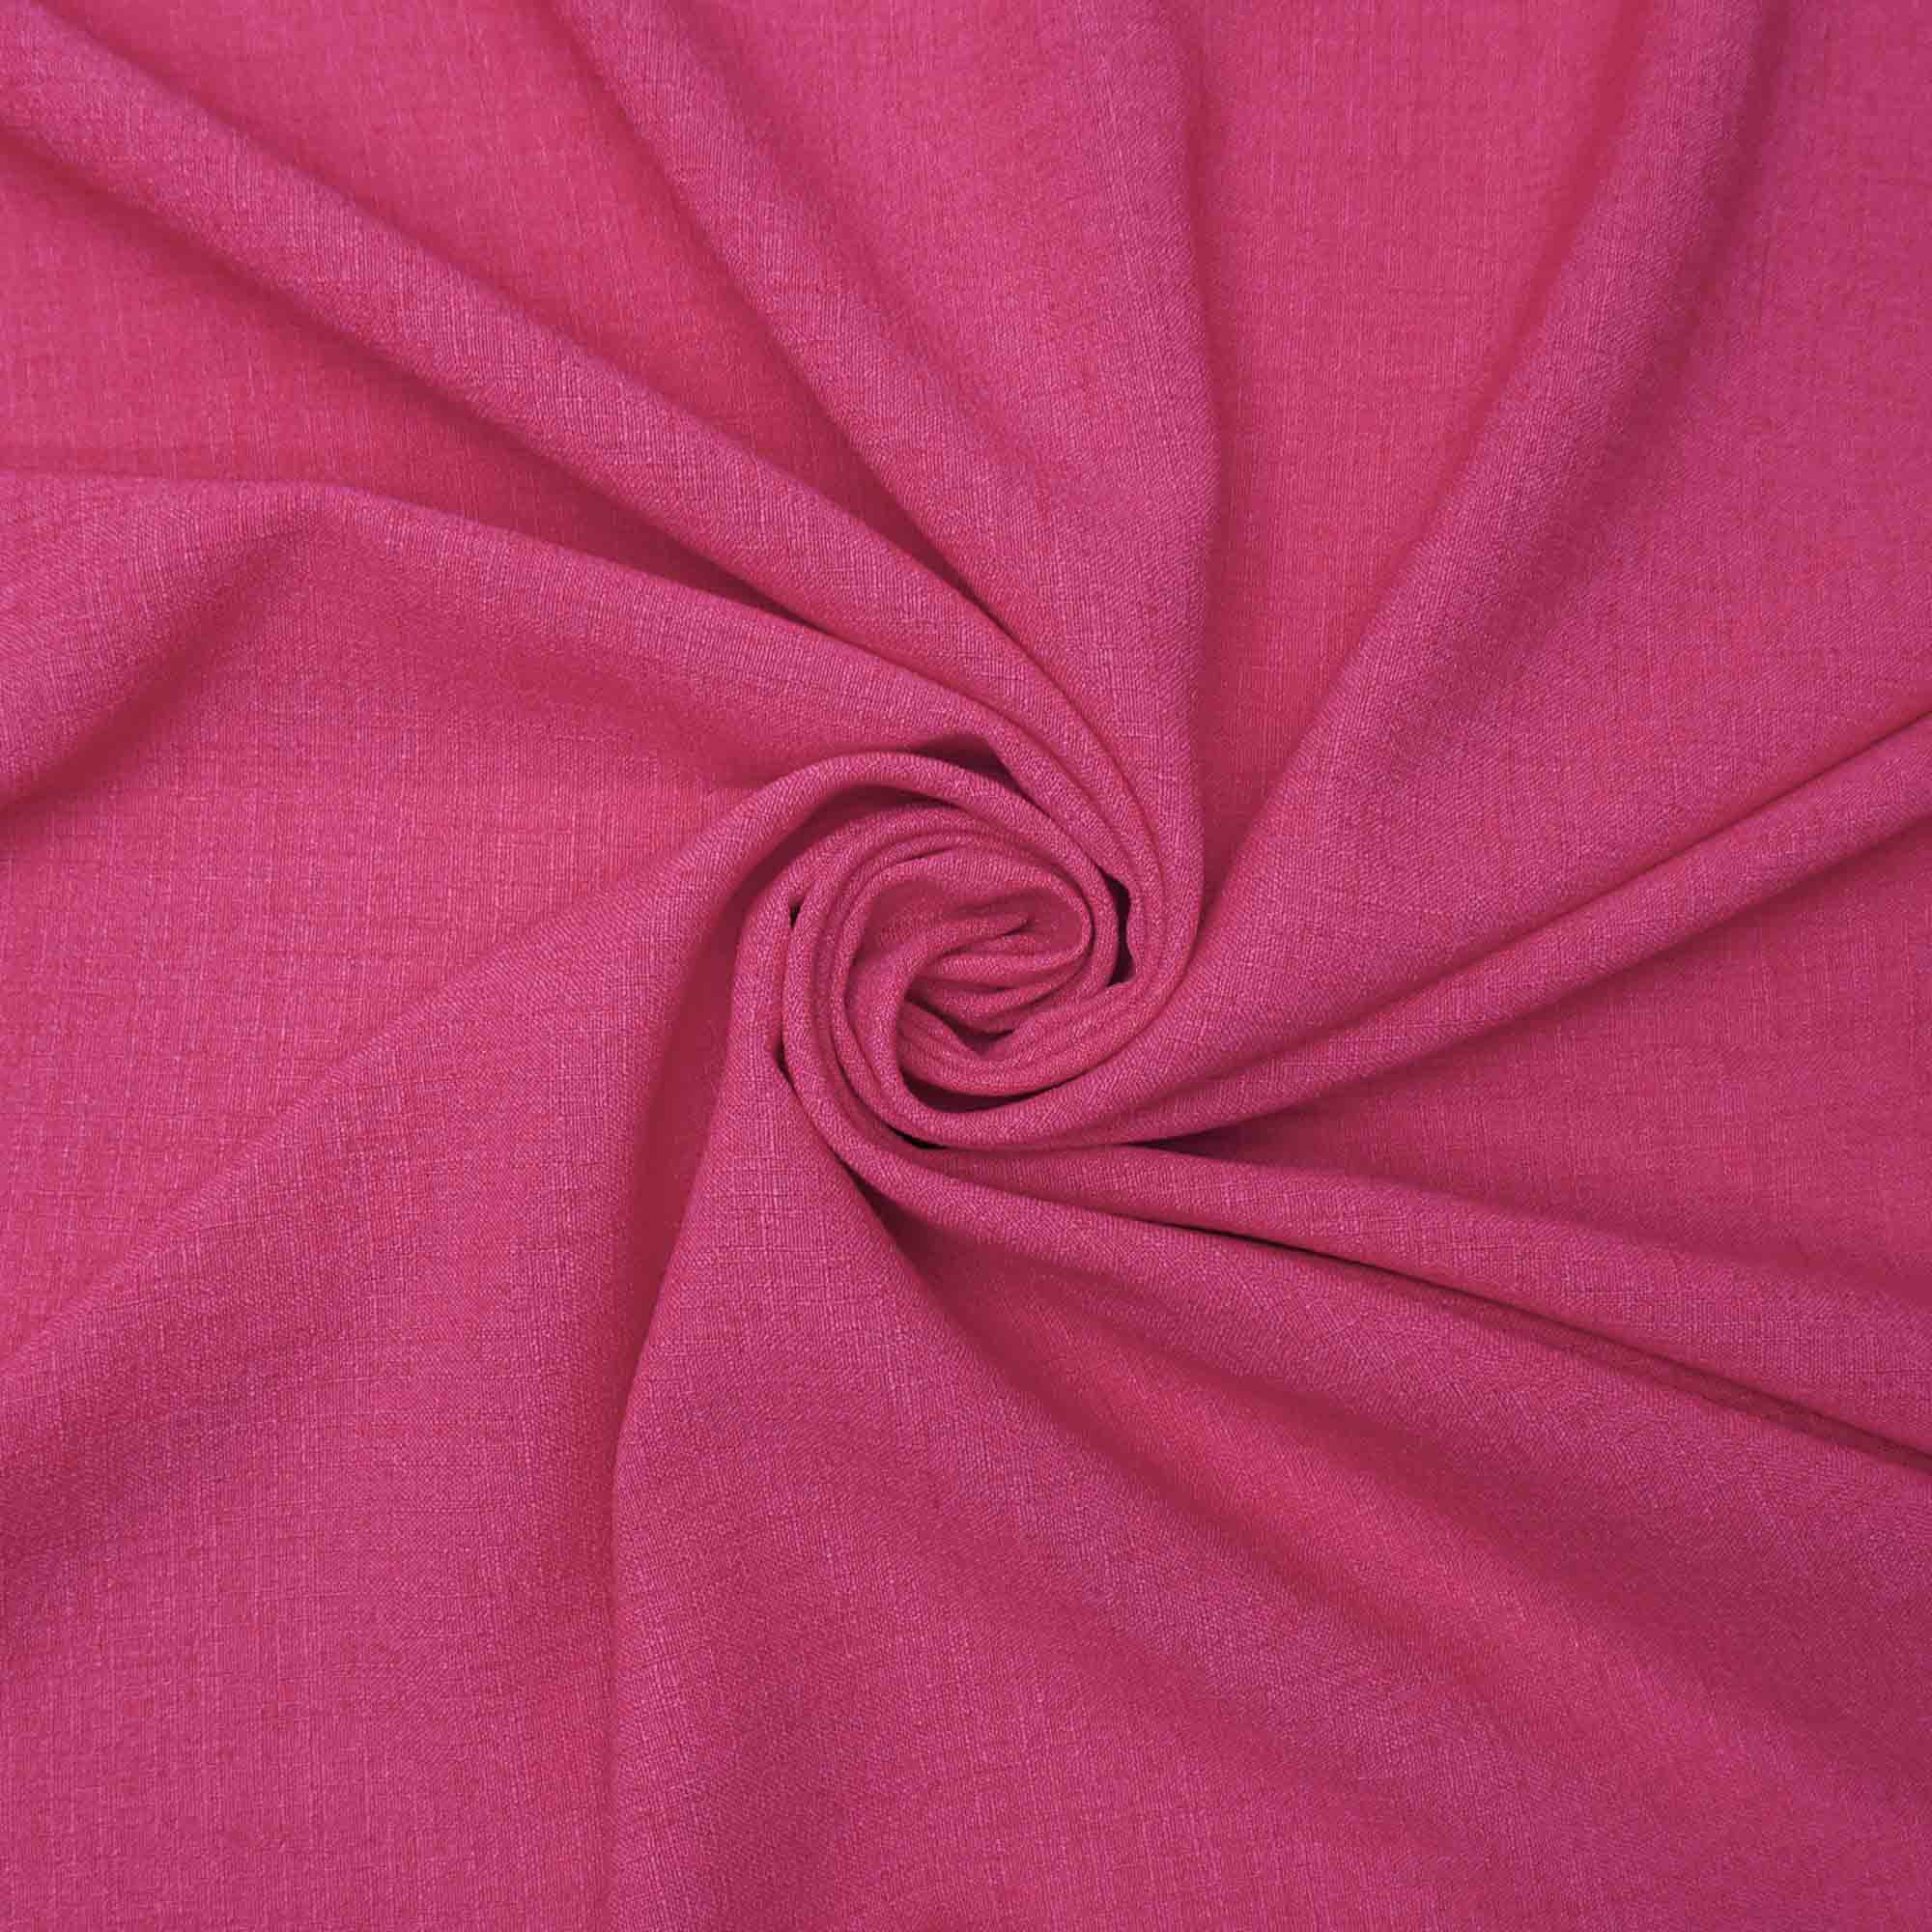 Tecido poliester com textura de linho pink